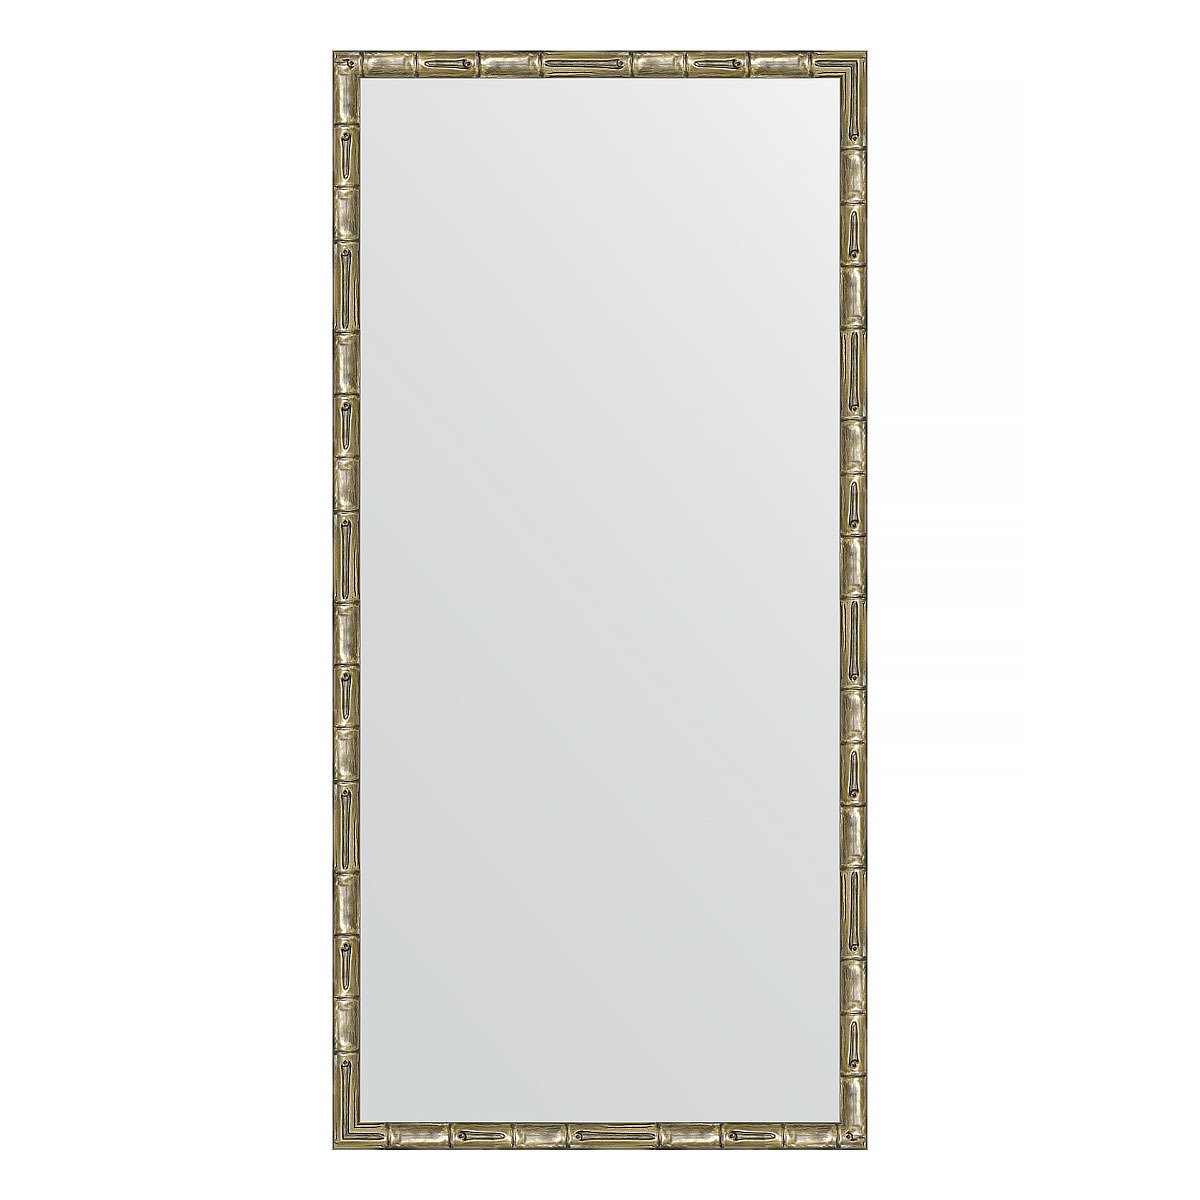 Зеркало в багетной раме Evoform серебряный бамбук 24 мм 47х97 см зеркало с фацетом в багетной раме evoform серебряный бамбук 73 мм 58х143 см